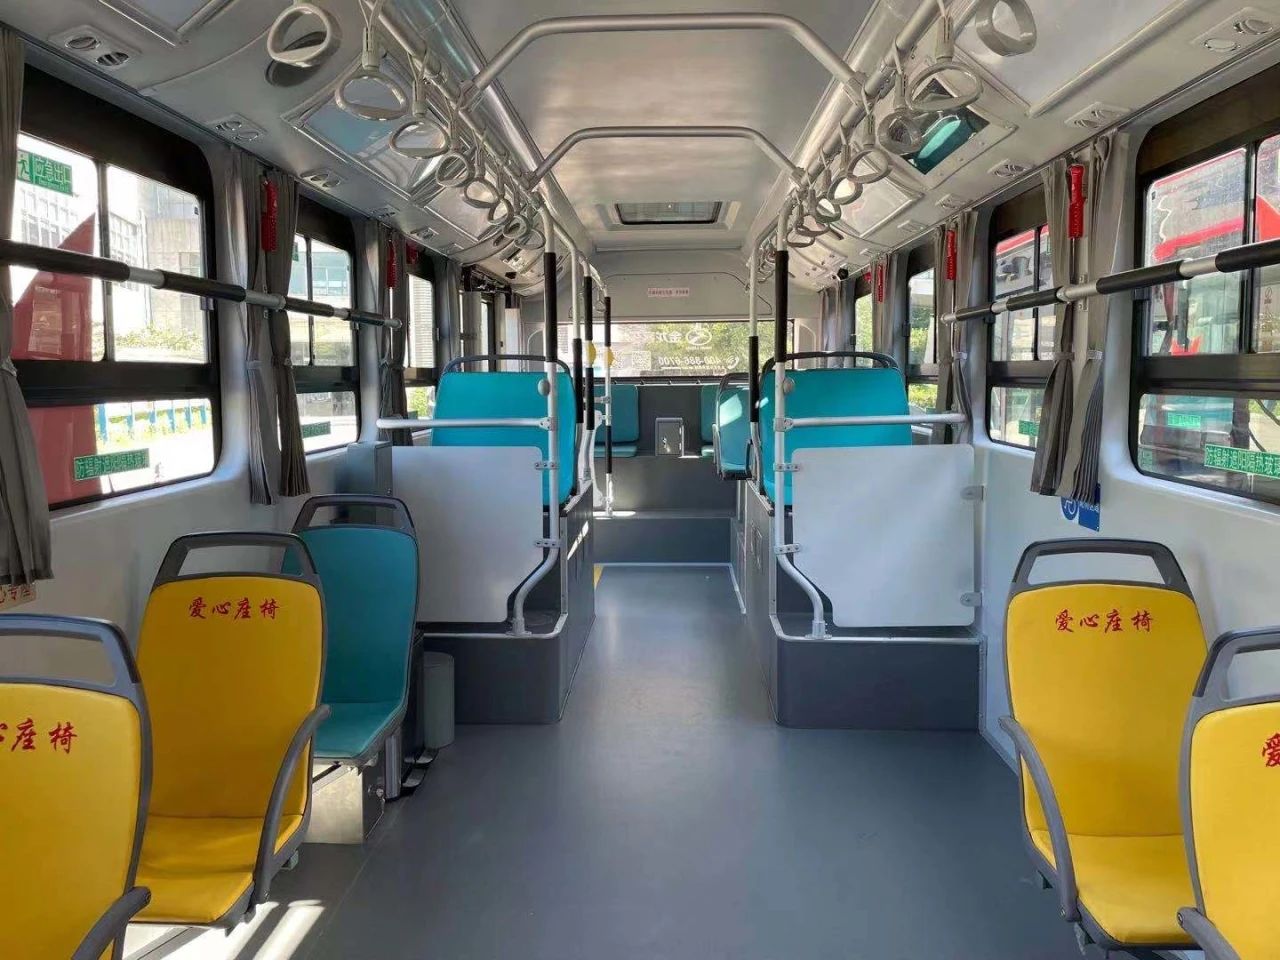 Carbon fiber composite material magaan ang timbang bagong enerhiya bus